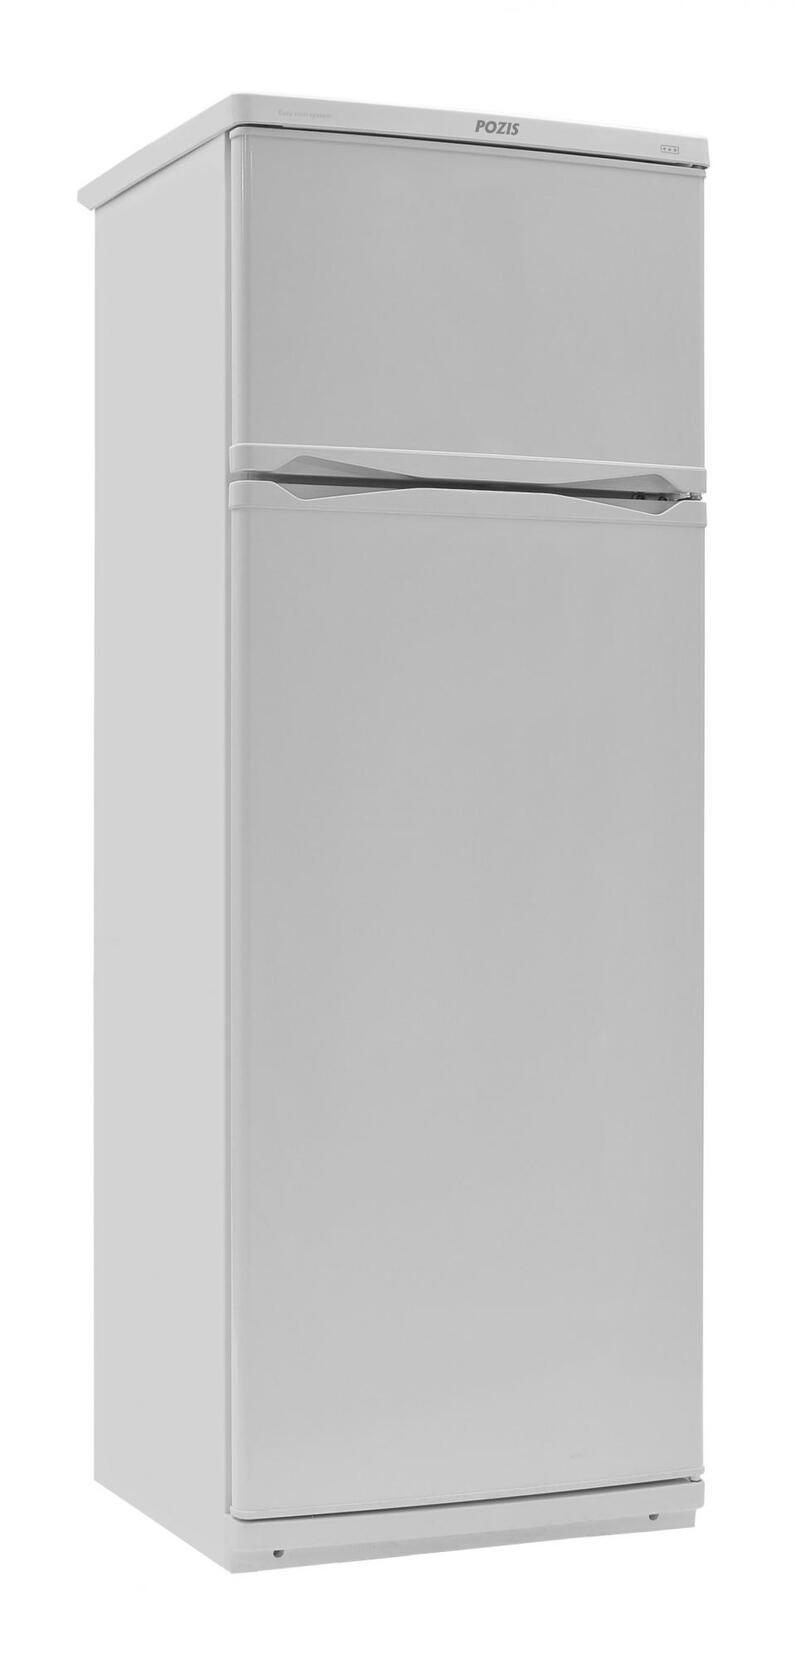 90469216 Отдельностоящий холодильник МИР-244-1 60x168 см цвет белый STLM-0239107 POZIS